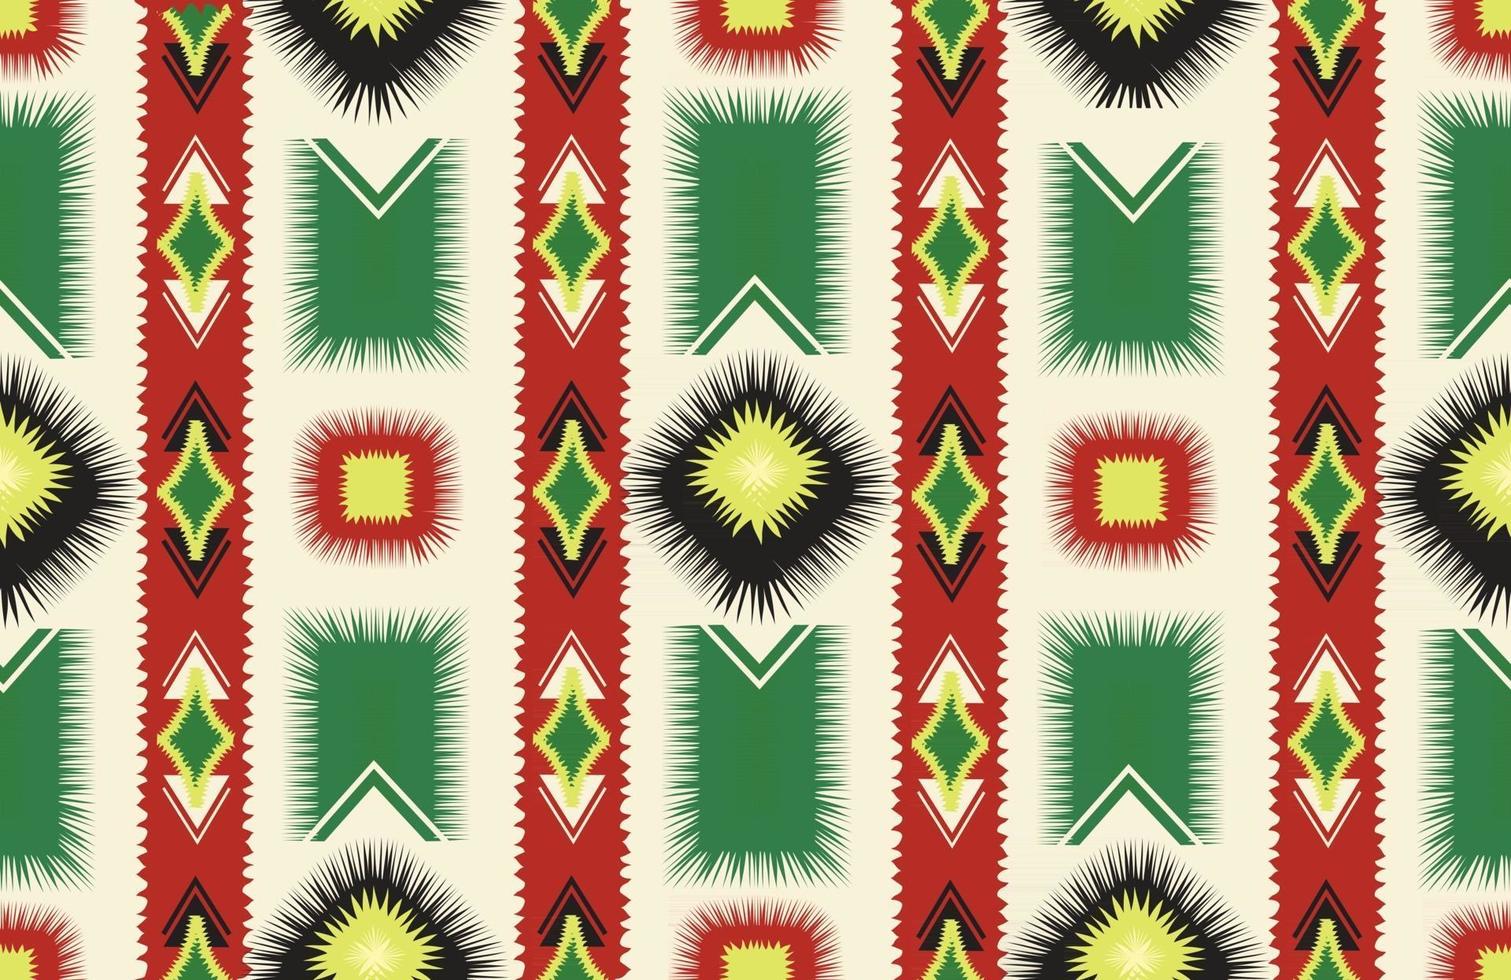 ikat abstrait ethnique transparente motif emballage ornemental imprimé géométrique traditionnel mexicain fond folklorique motif ethnique pour emballage papier peint tissu textile artisanat broderie vecteur